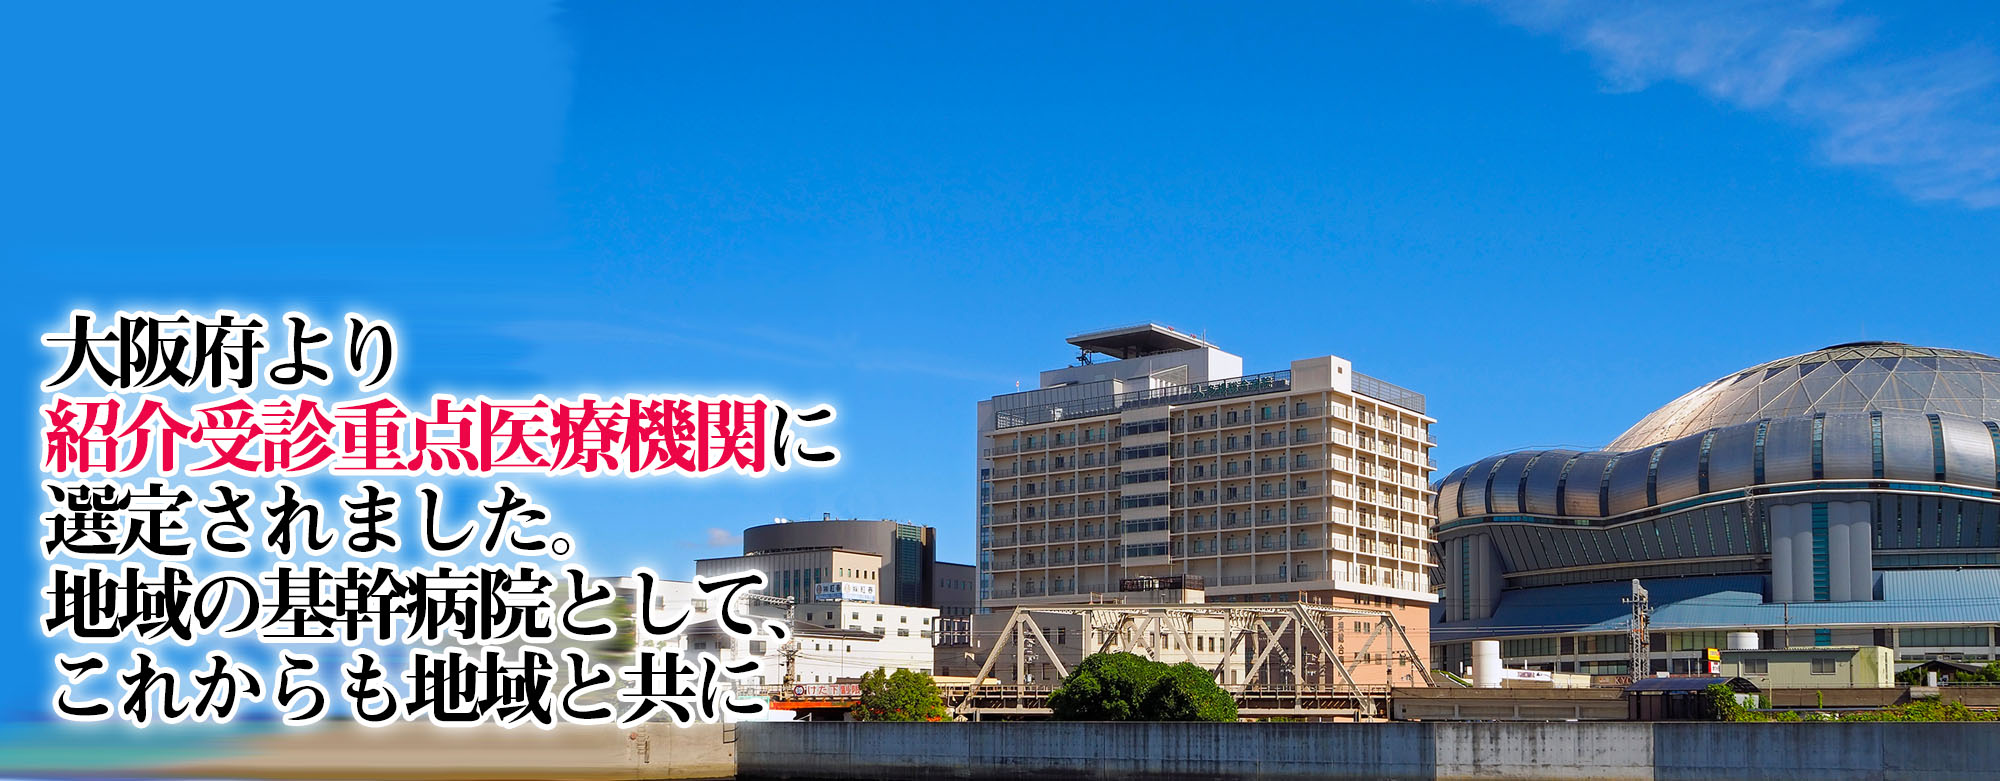 大阪府より紹介受診重点医療機関に選定されました。